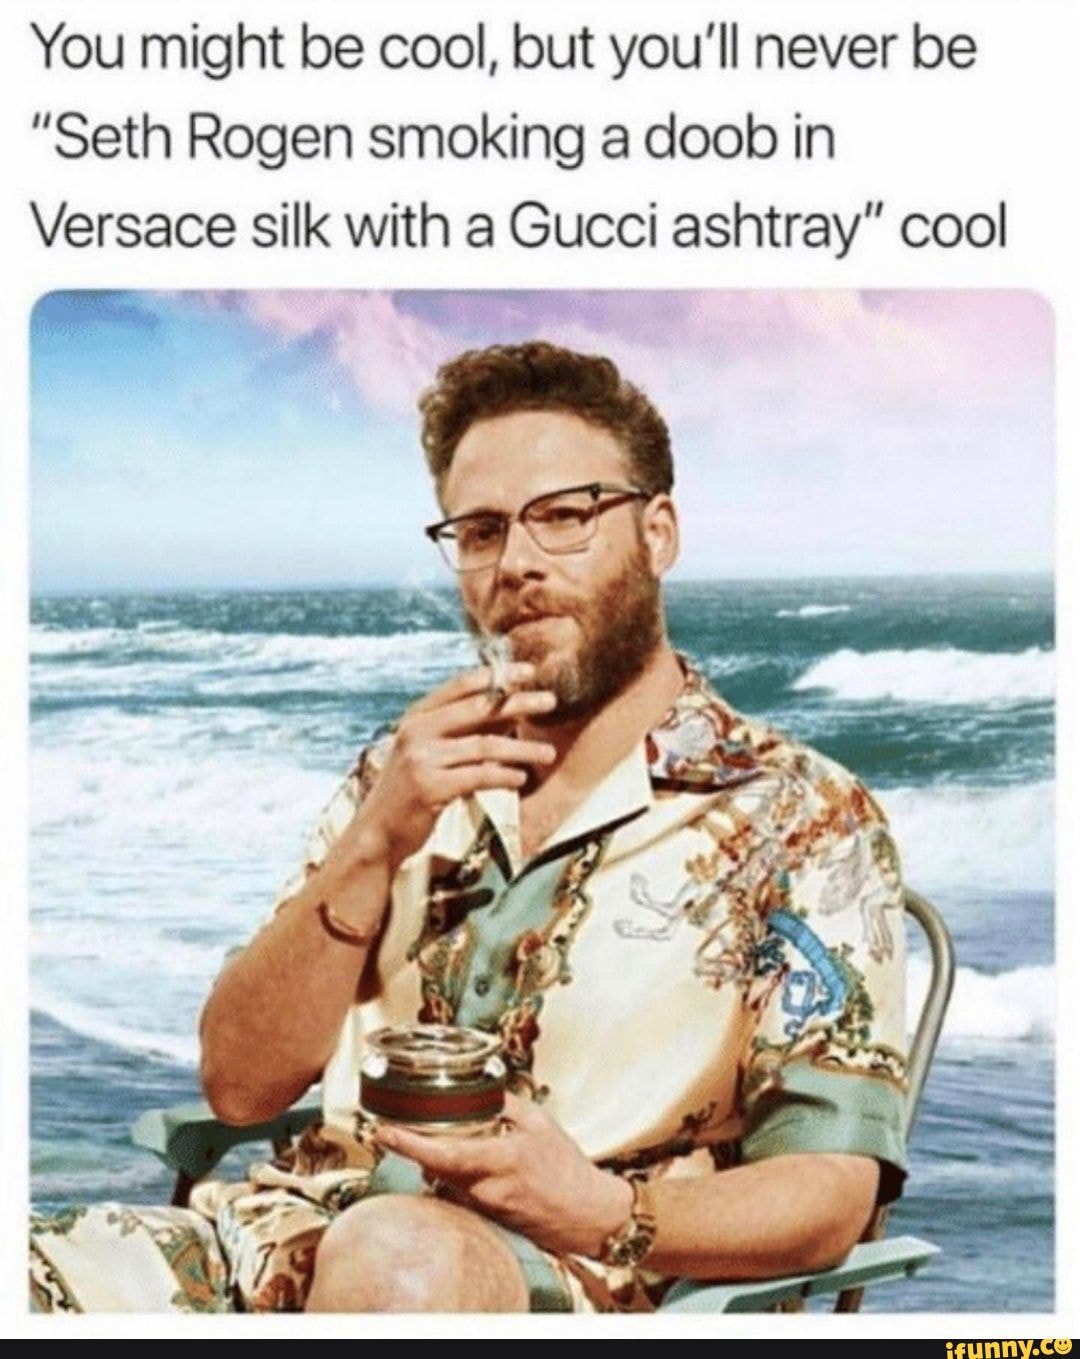 Seth Rogen has Gucci ashtrays on DECK